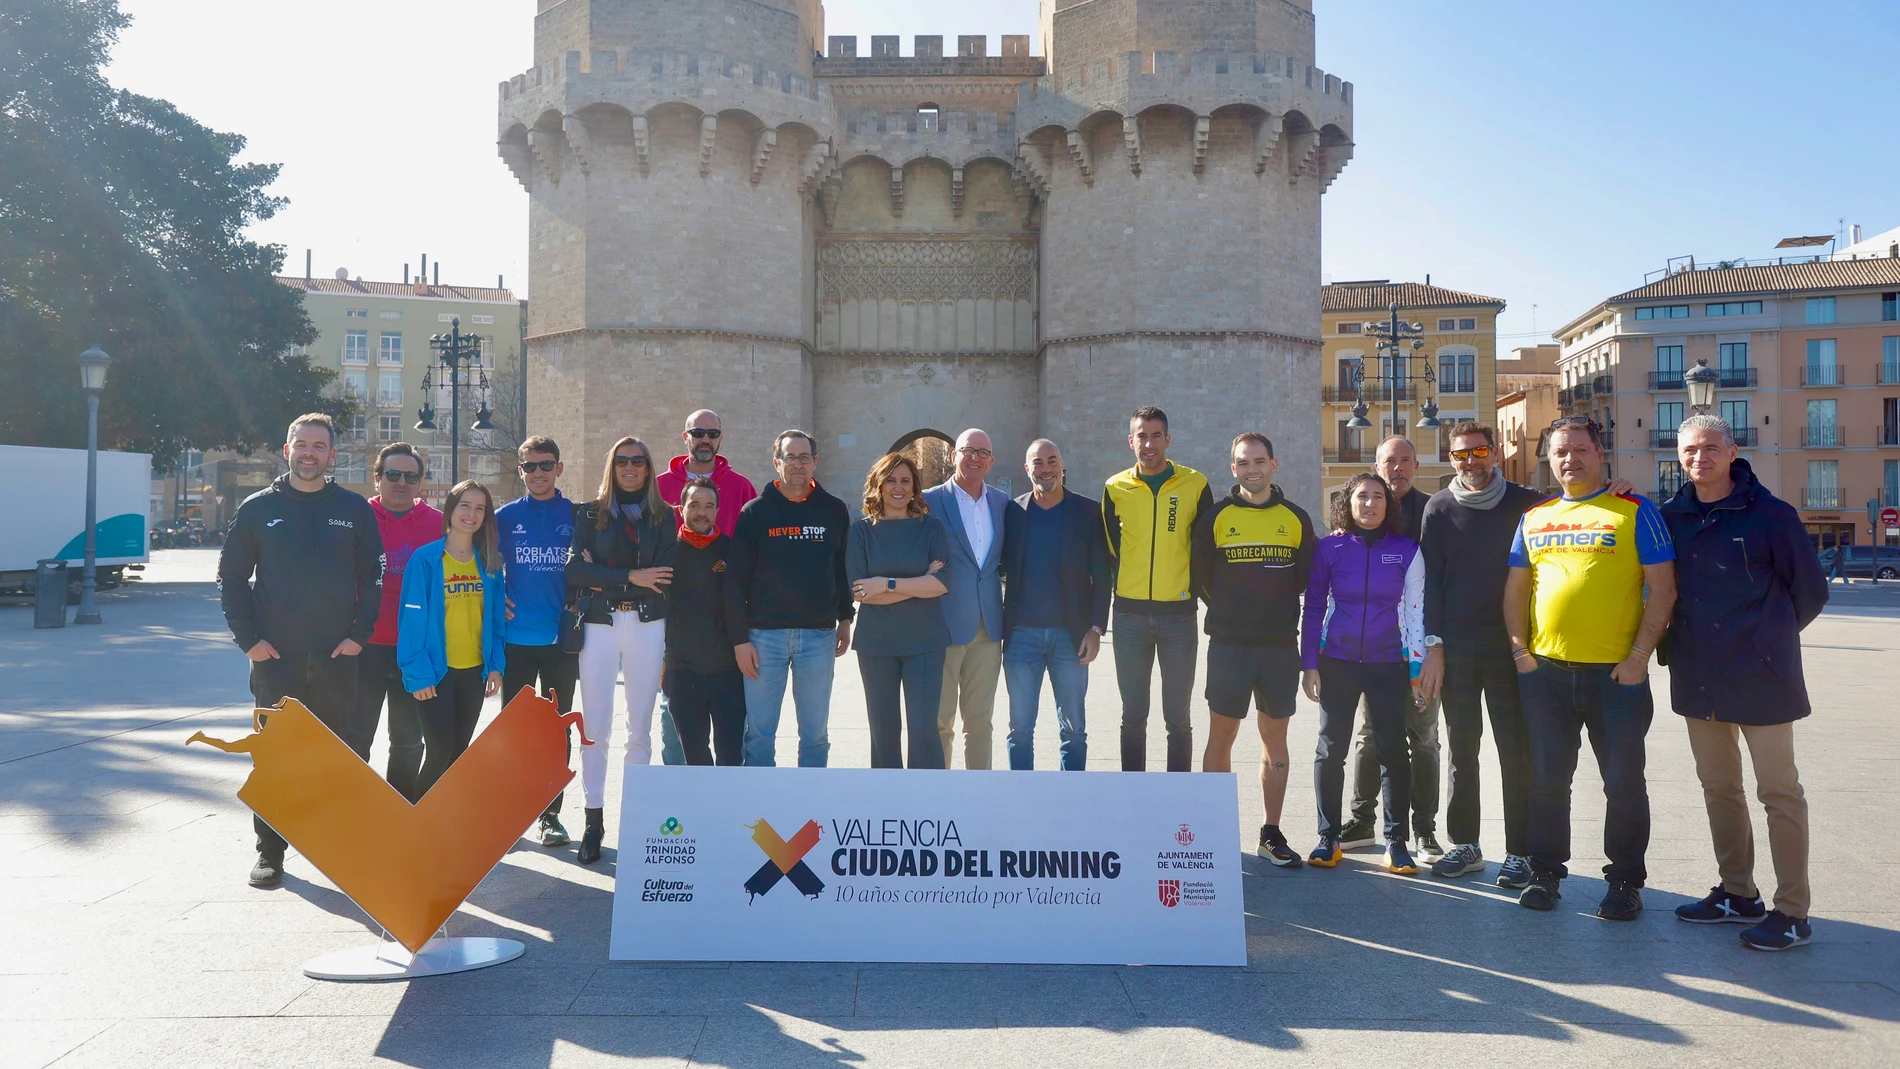 La alcaldesa de Valencia junto a Juan Miguel Gómez y Juan Botella, y otros representantes de Valencia Ciudad del Running